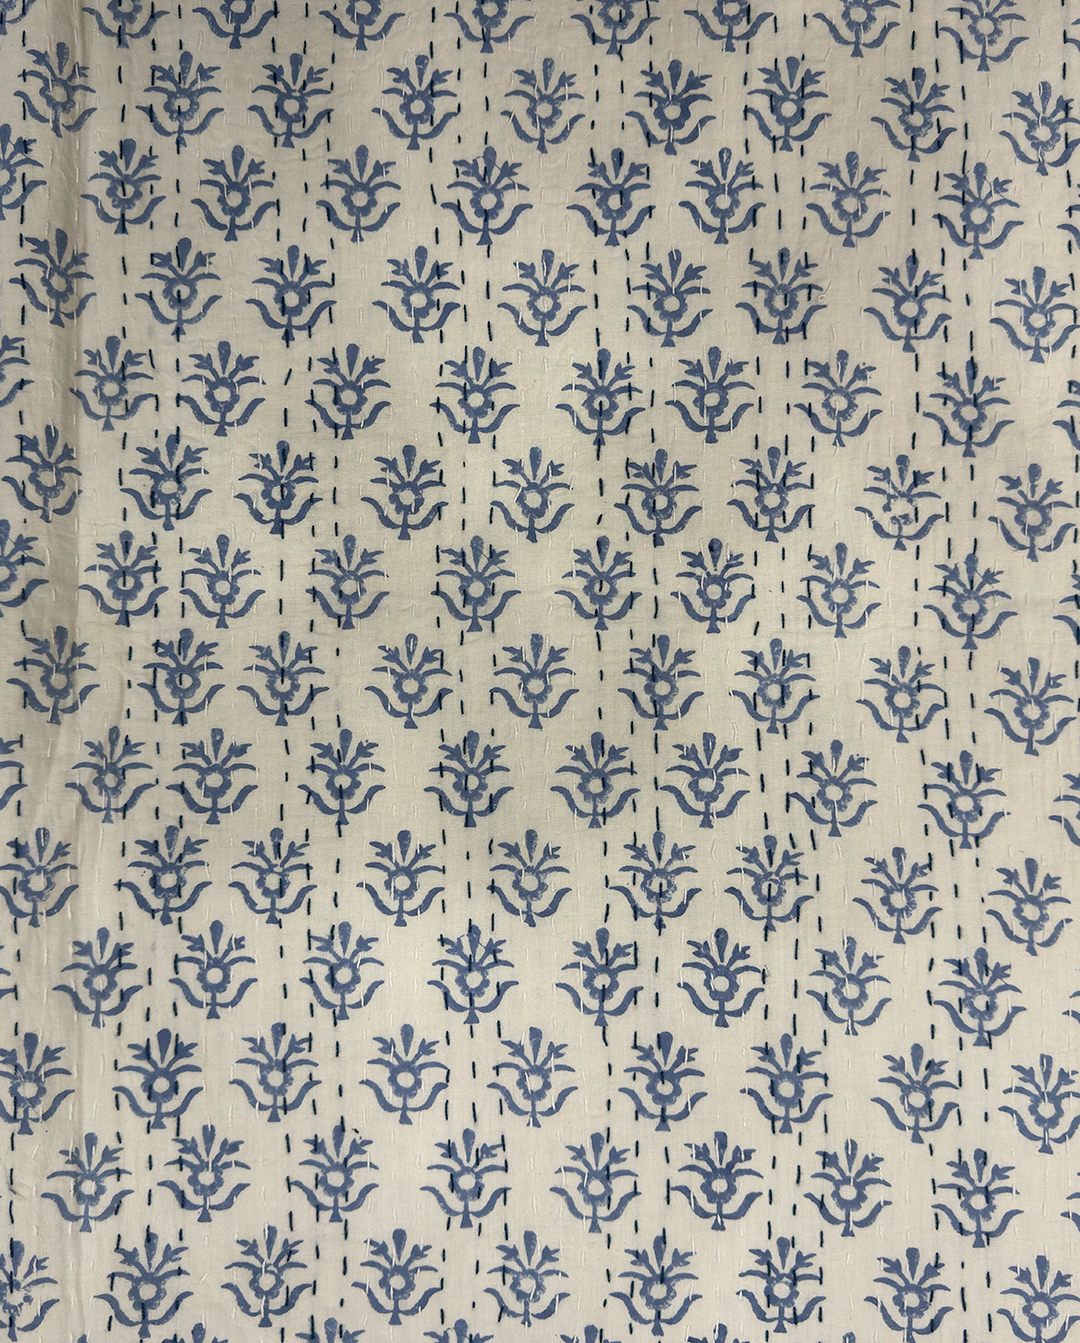 HandBlock Printed Kantha Bed Sheets (90 x 108 inches)